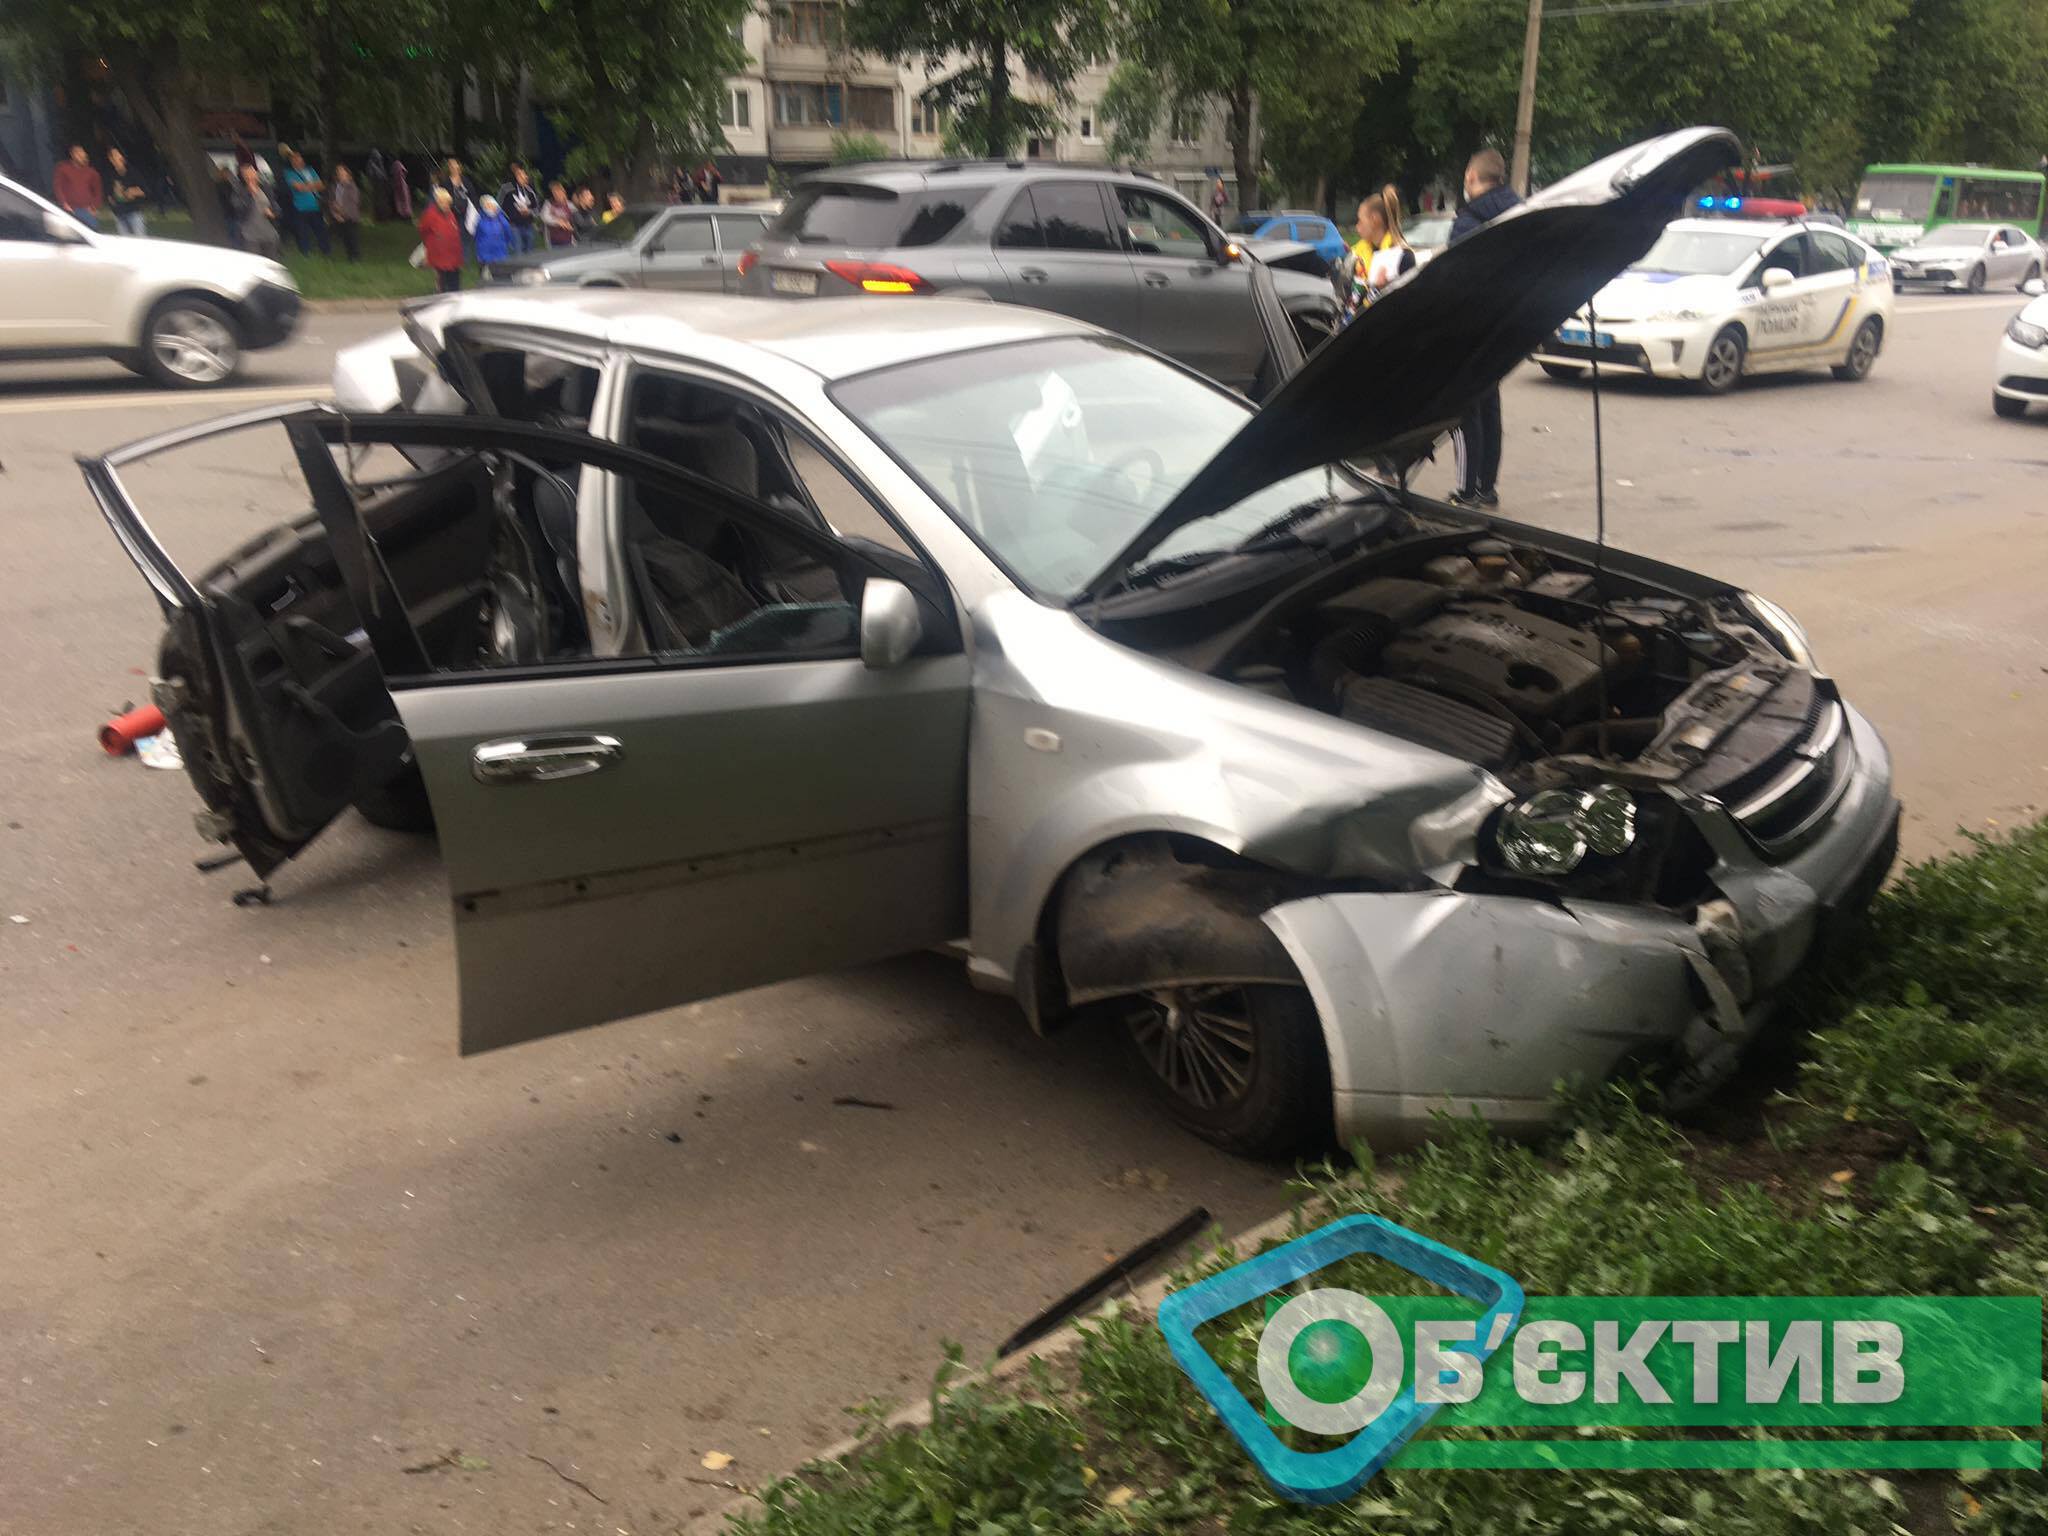 Автомобиль Сhevrolet после ДТП в Харькове развернуло поперек дороги